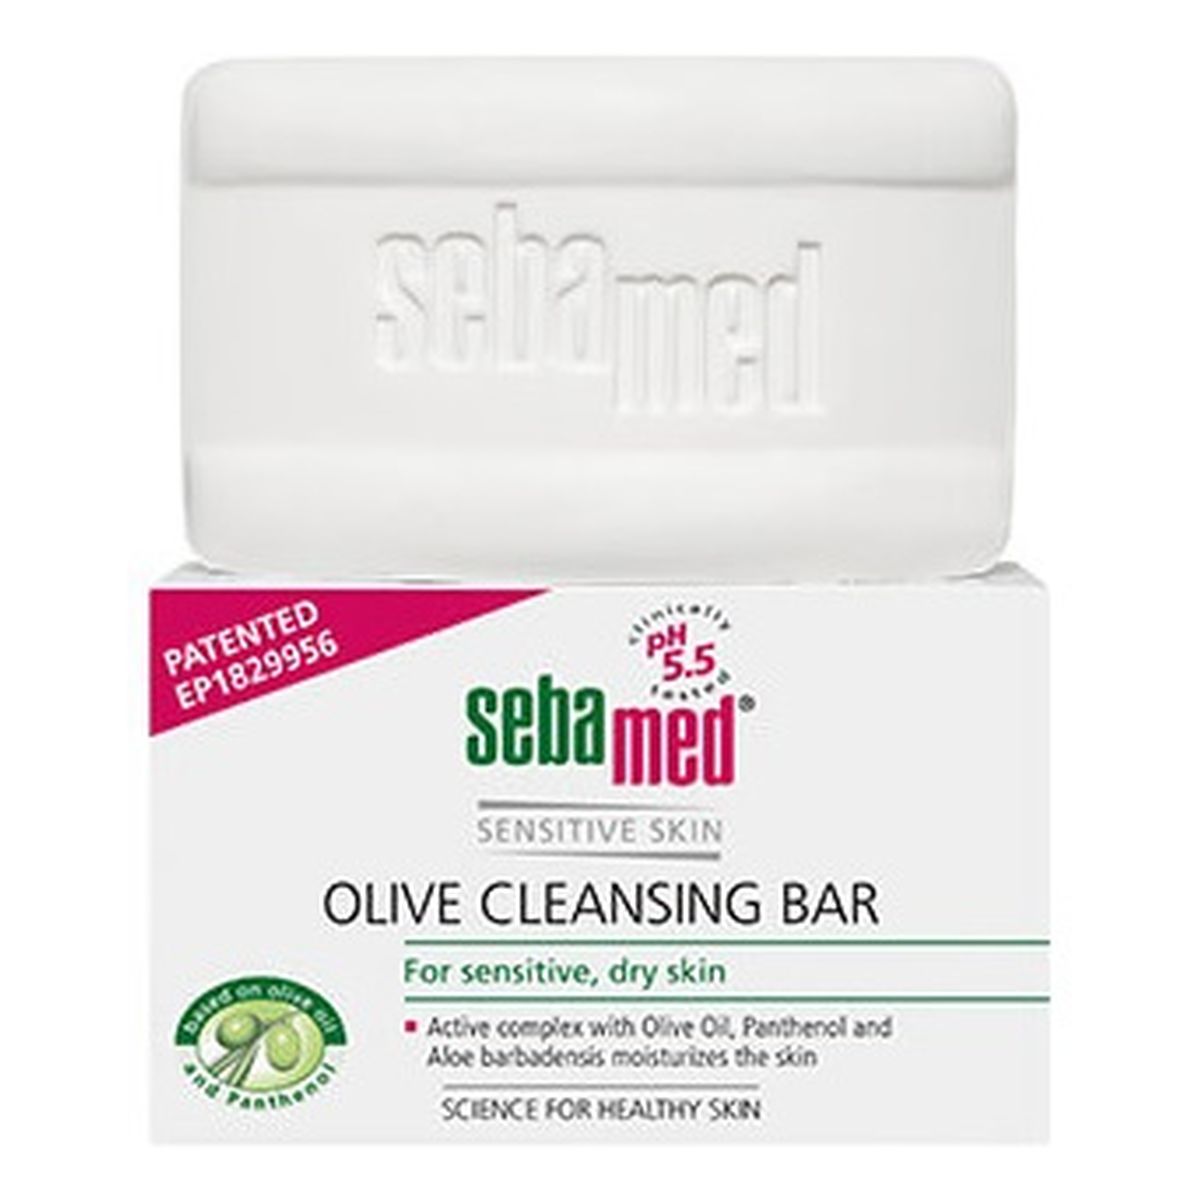 Sebamed Sensitive Skin Olive Cleansing Bar oliwkowe Mydło w kostce do mycia ciała 150g 150g